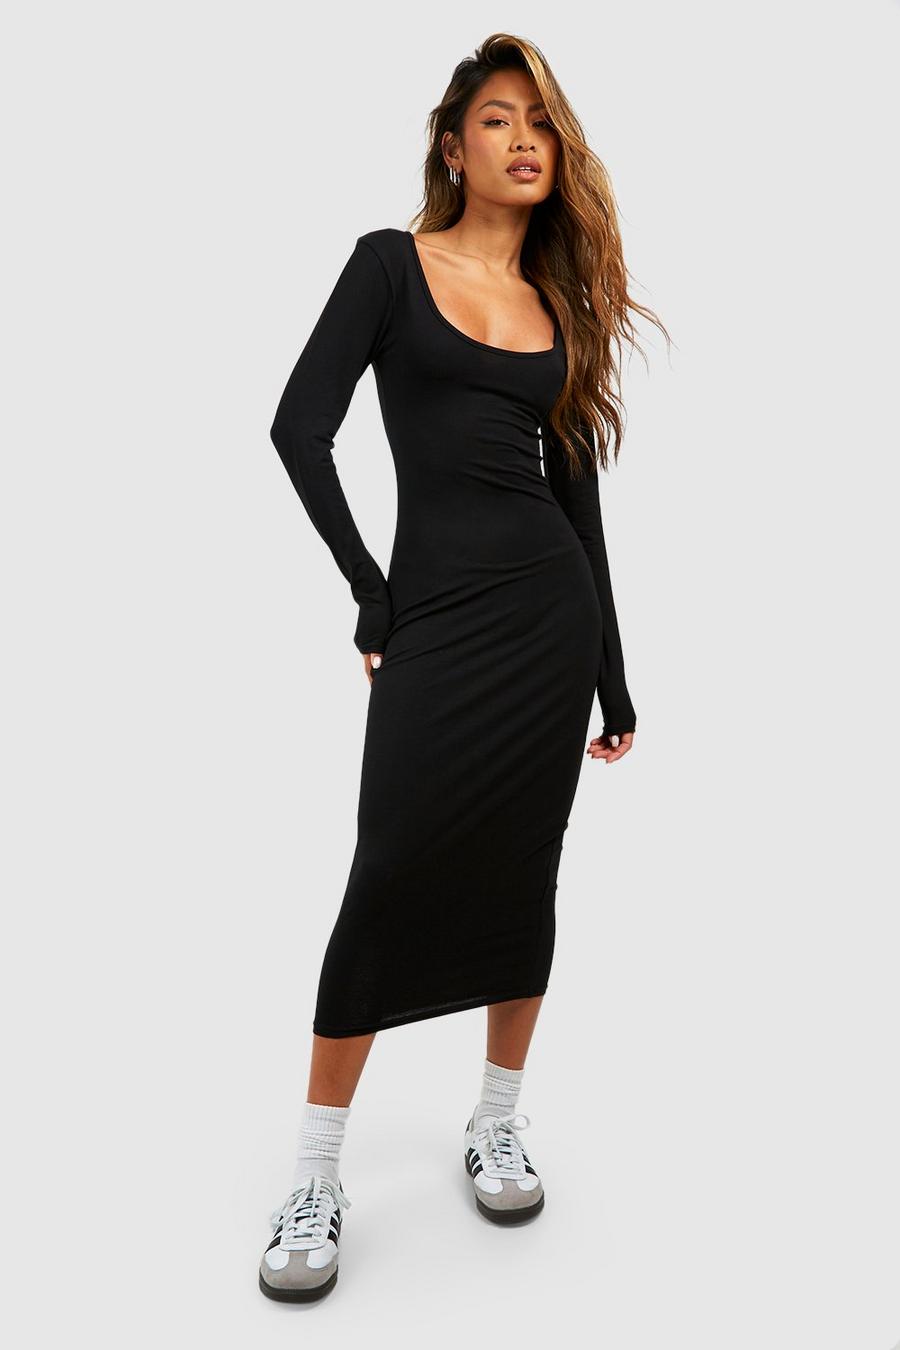 Black Premium Super Soft Scoop Neck Midaxi Dress